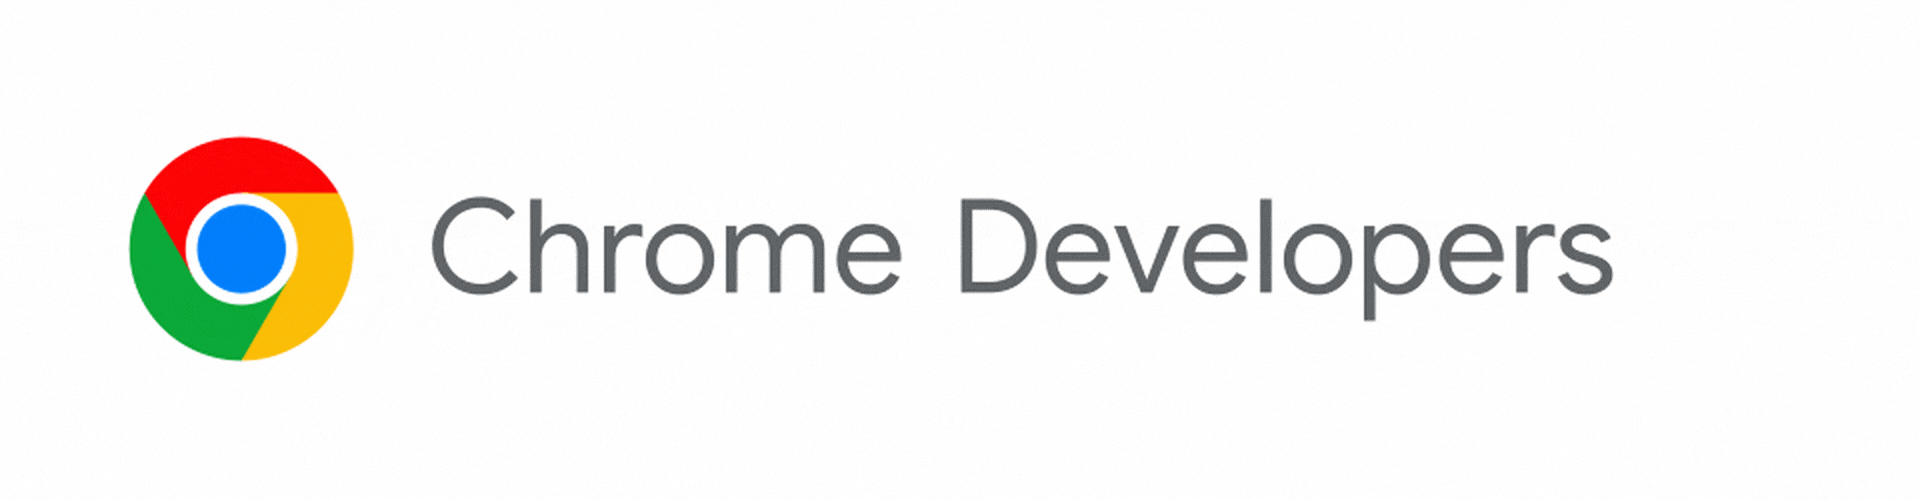 Het Chrome Developers-logo verandert in Chrome for Developers.